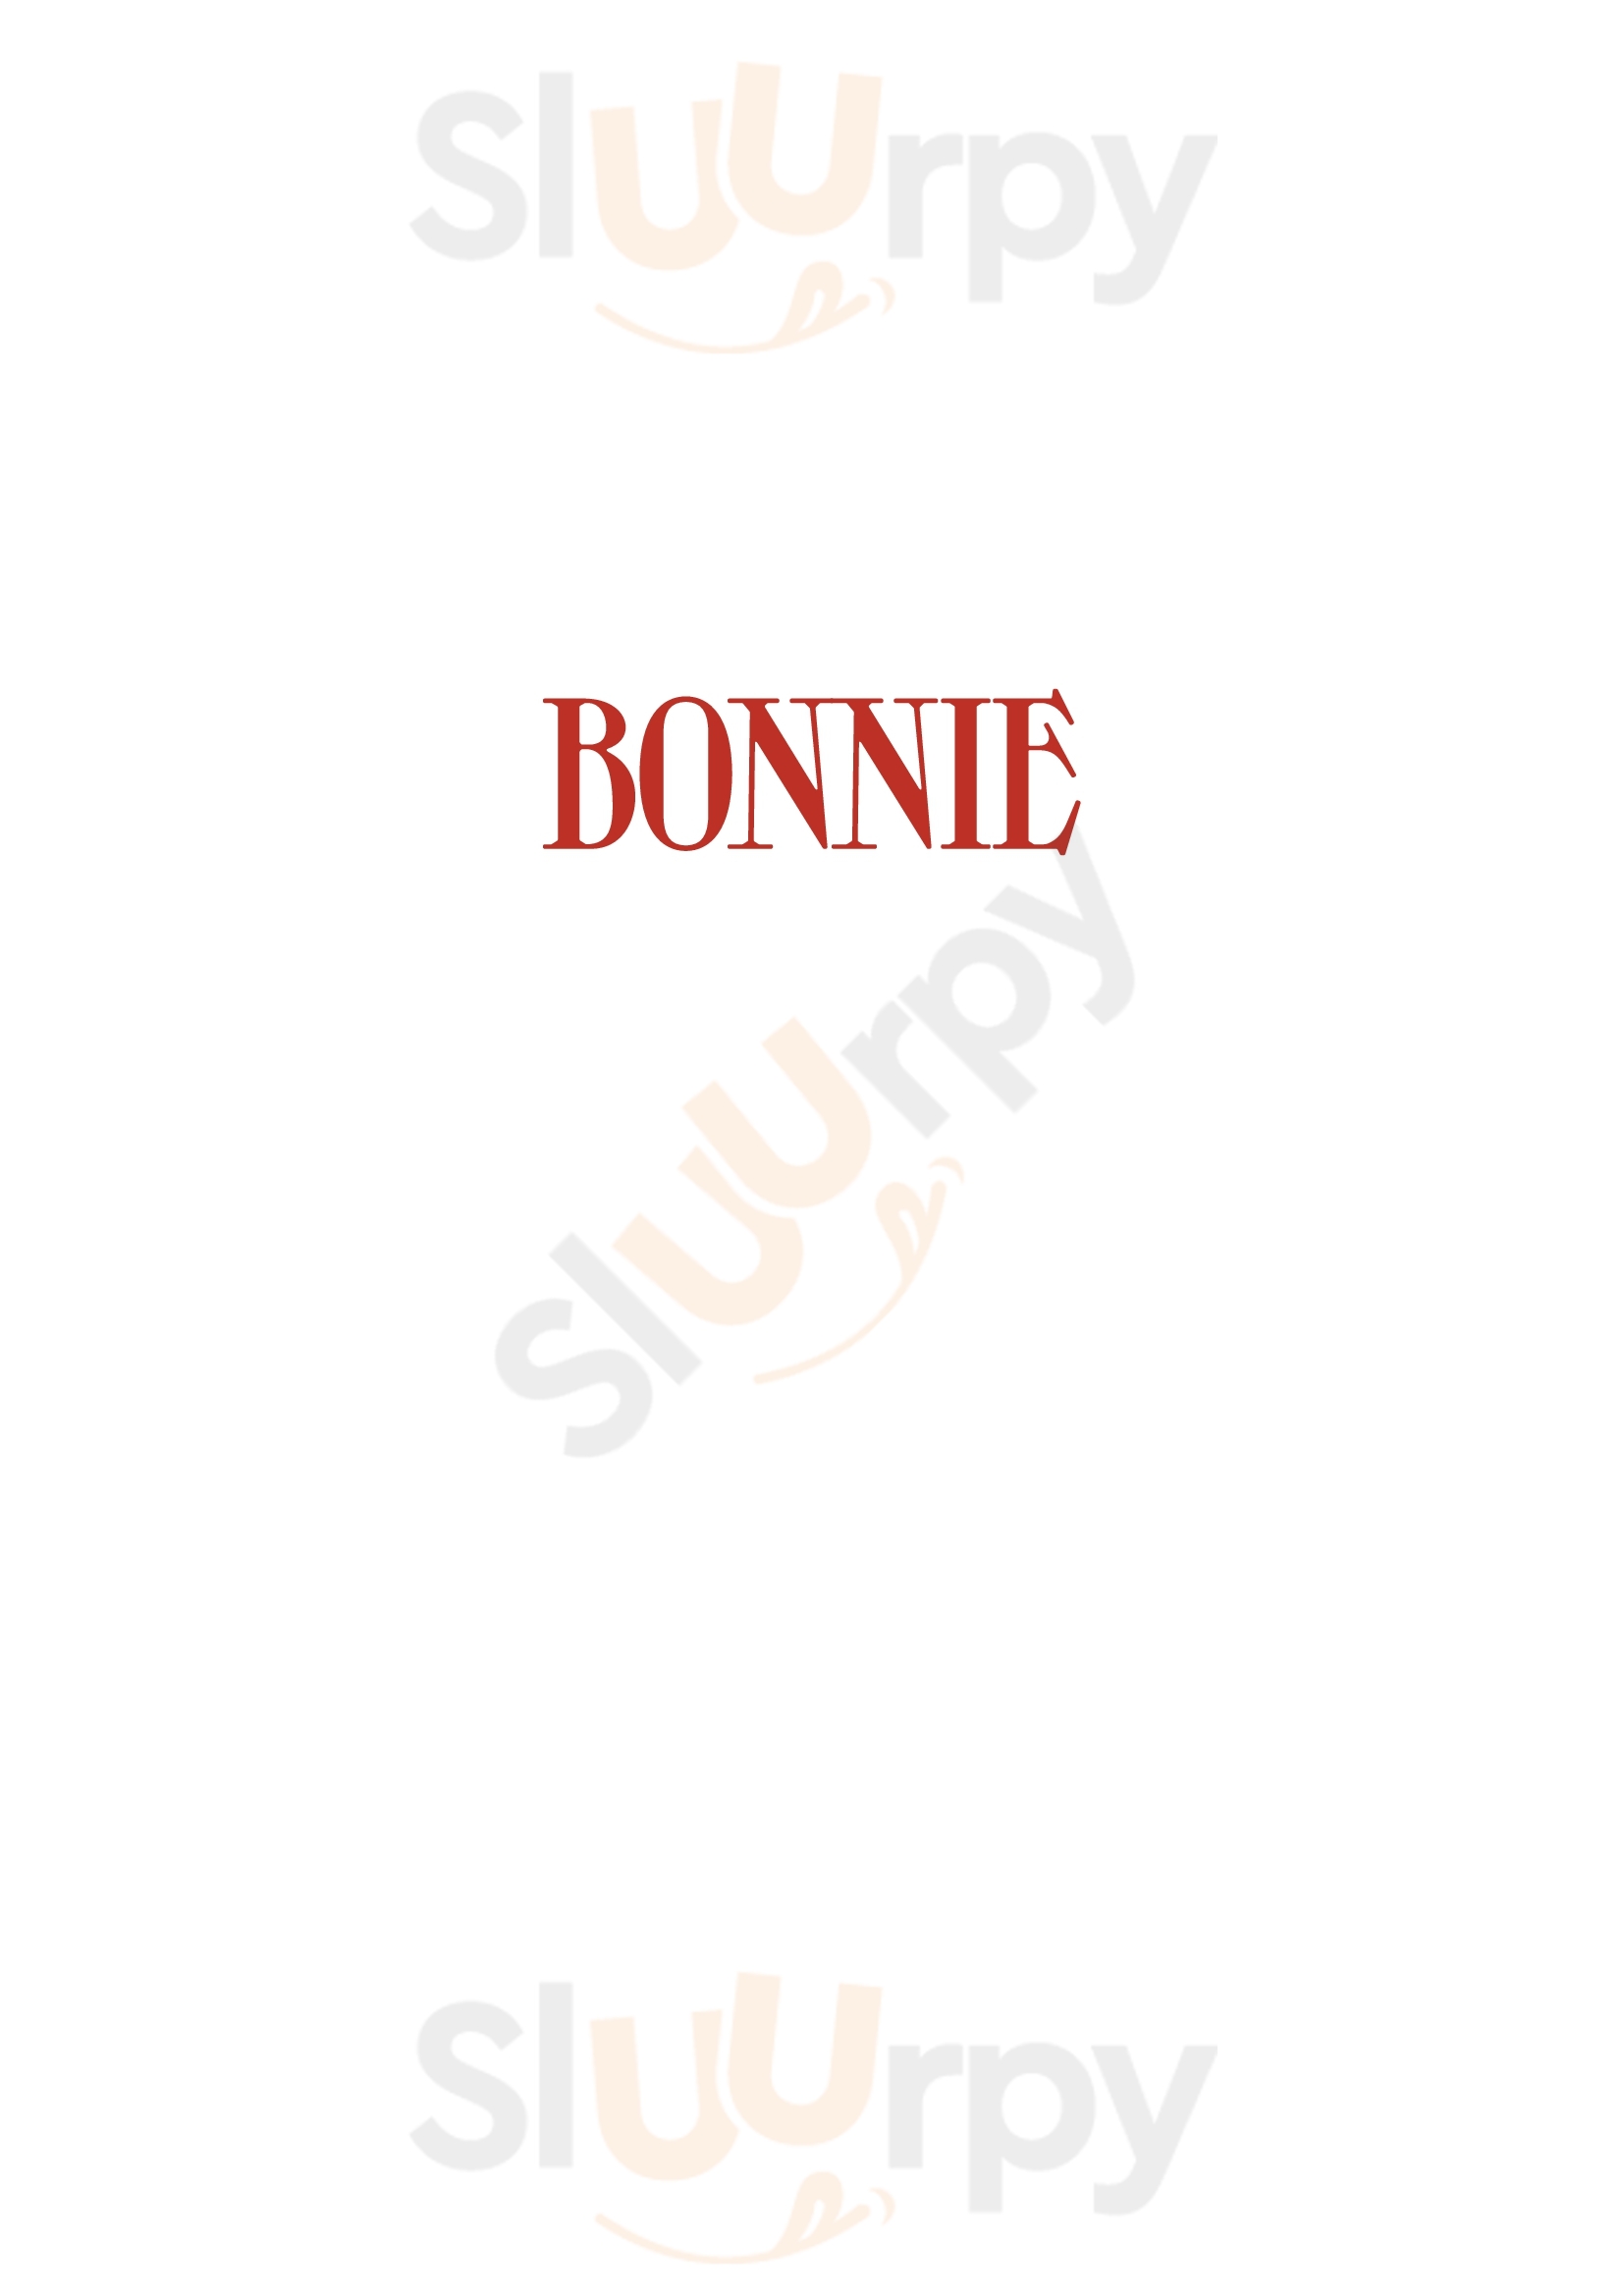 Bonnie Paris Menu - 1